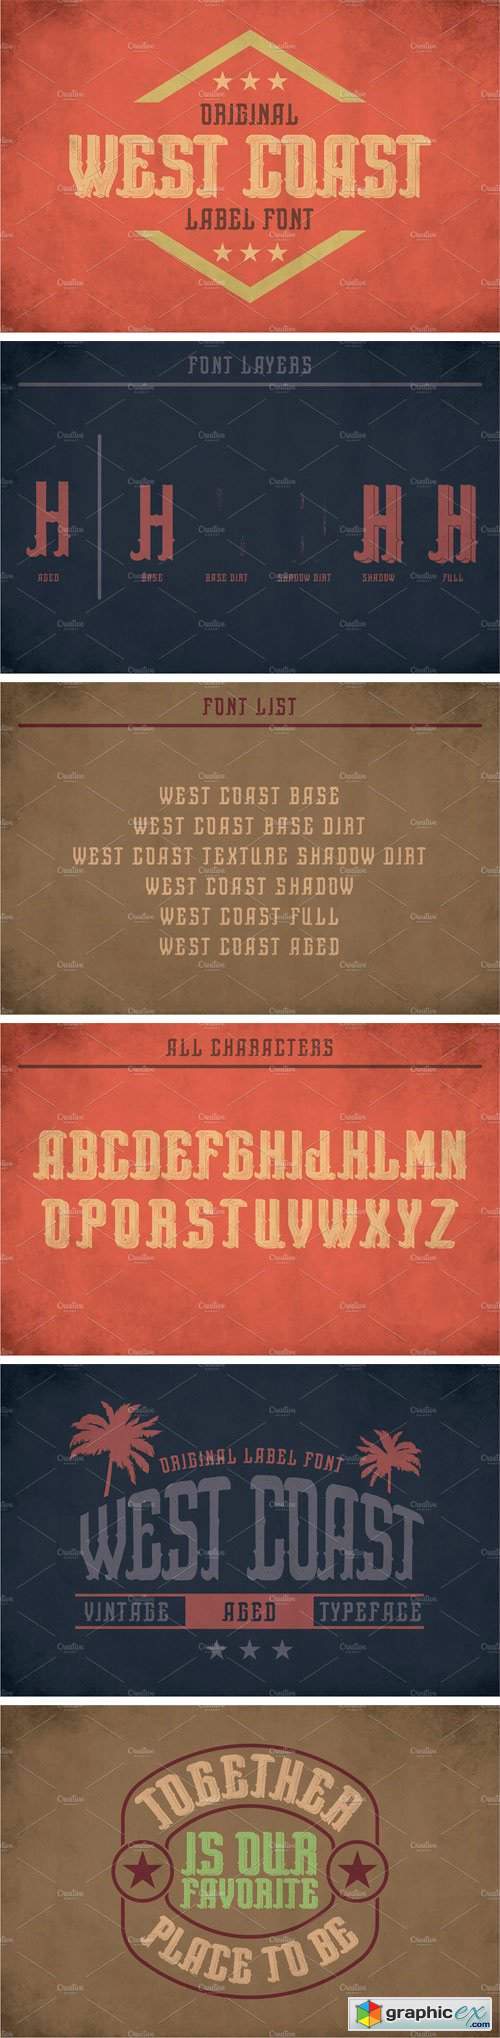 West Coast Vintage Label Typeface